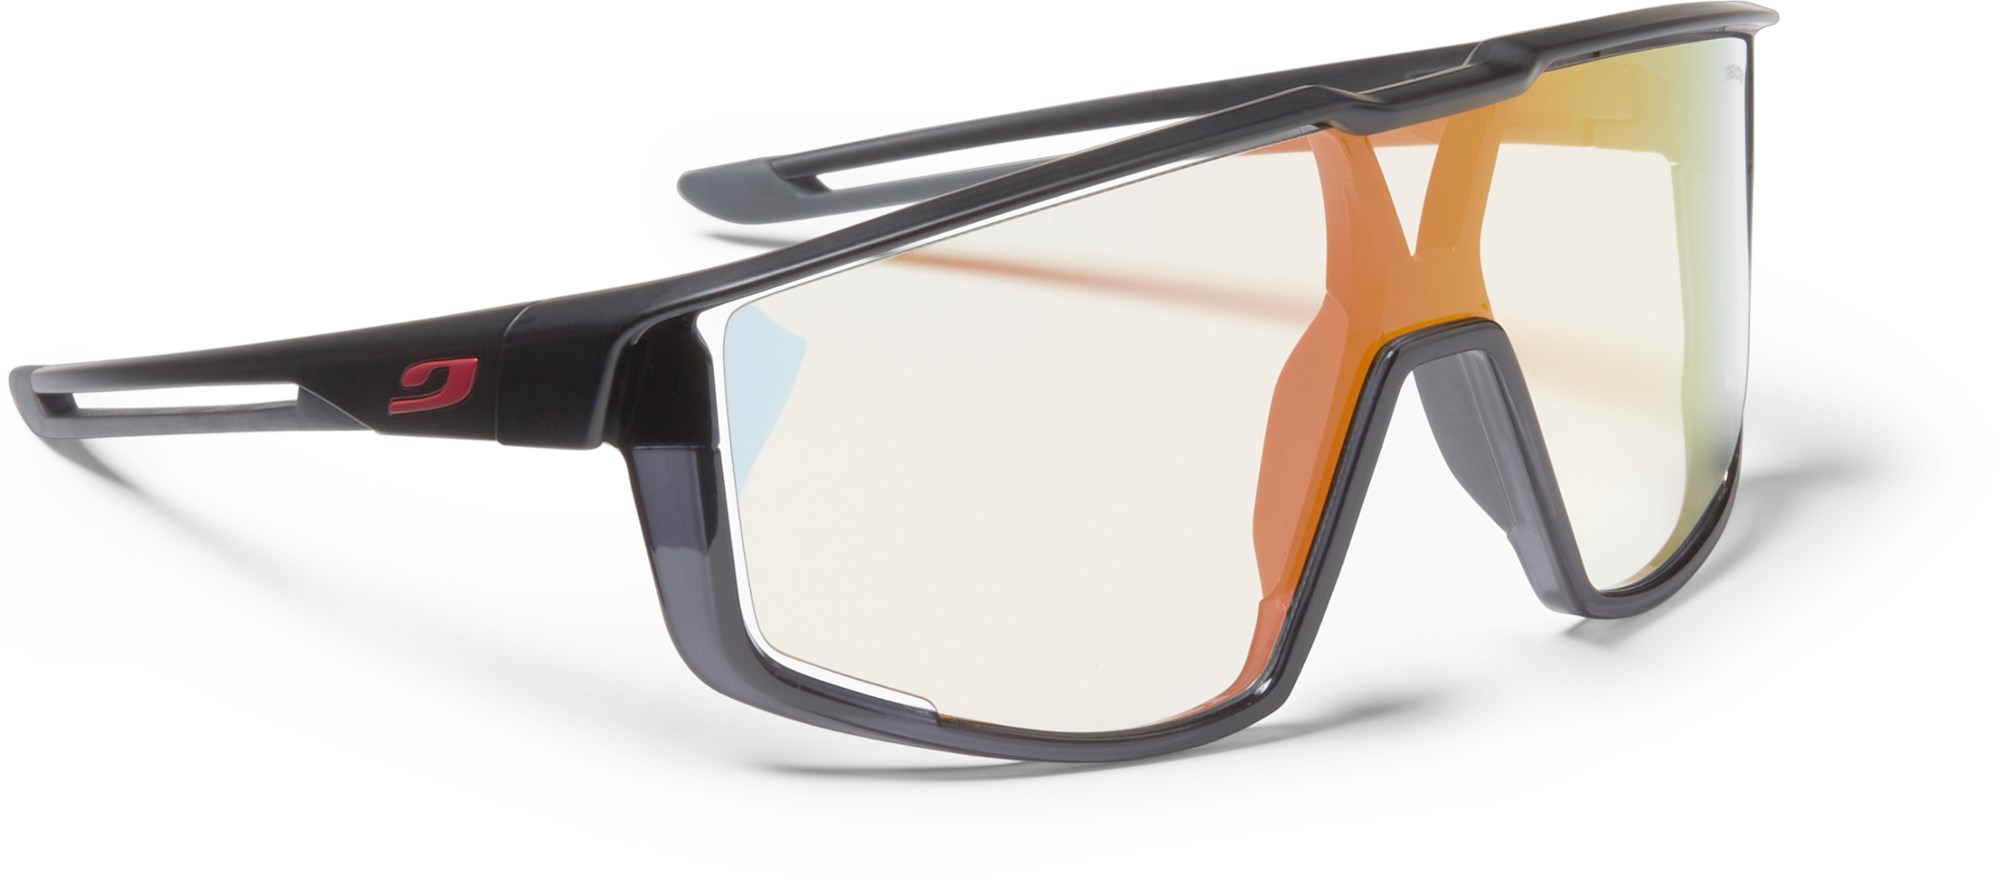 Солнцезащитные очки Fury Julbo, черный солнцезащитные очки svetodar116 очки велосипедные спорт очки темно синий черный